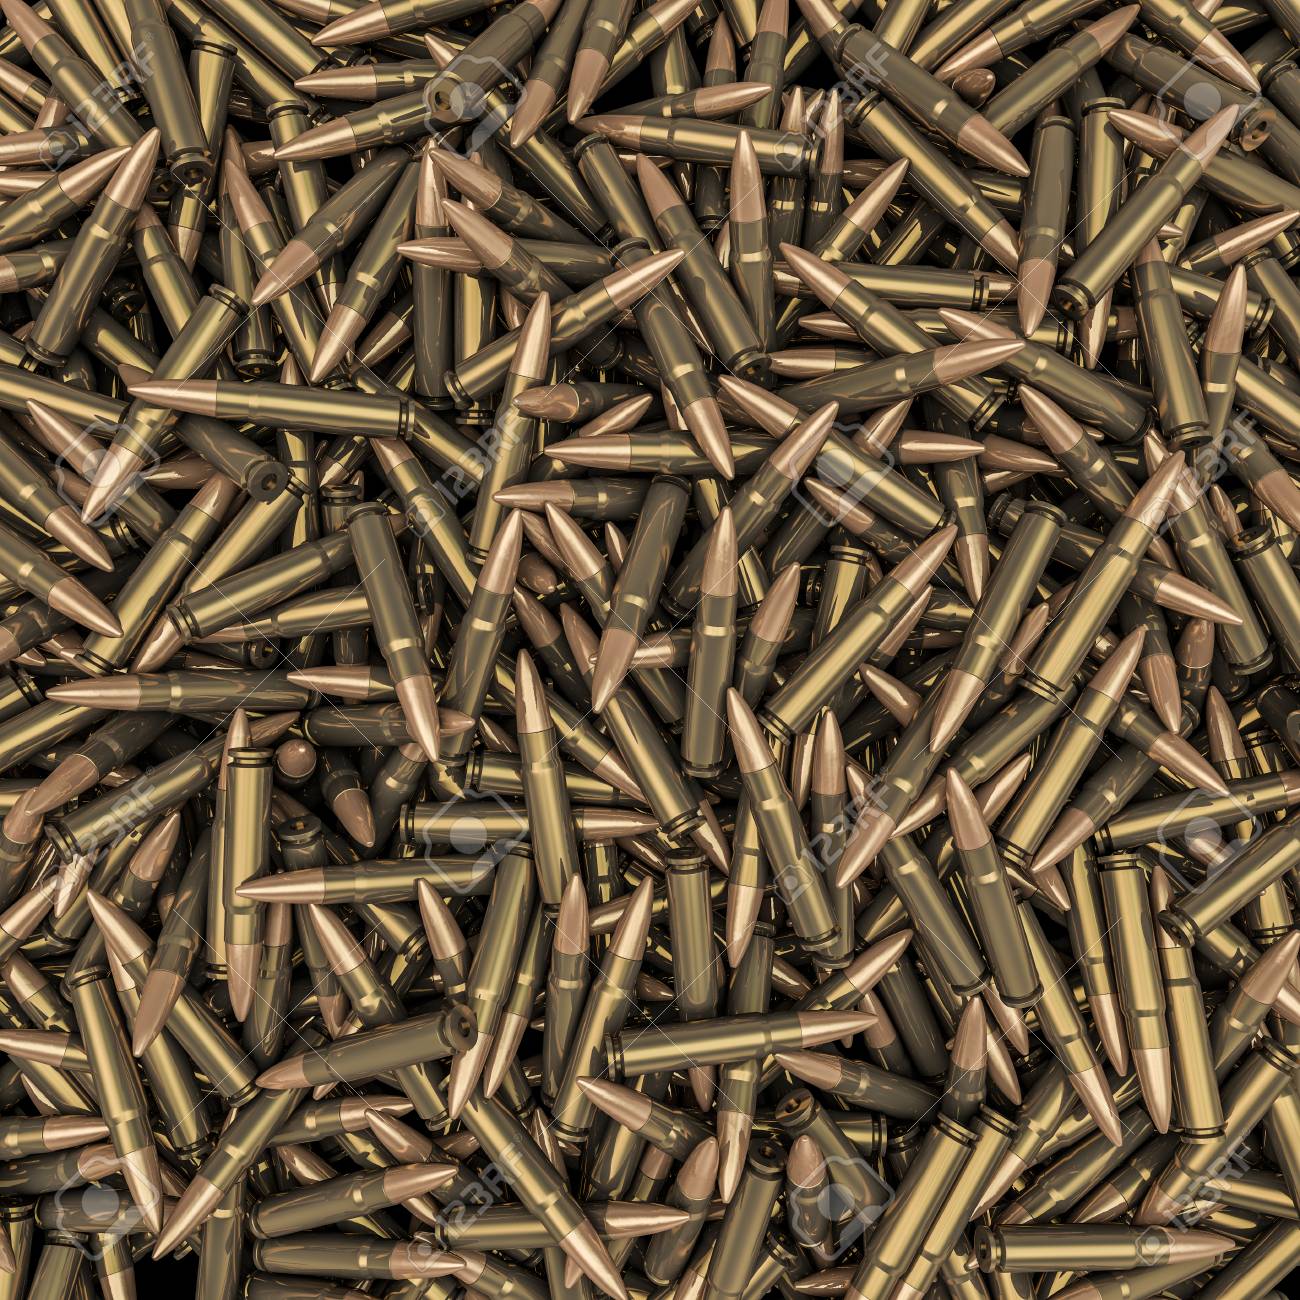 Rifle Bullets Background 3d Render Of Hundreds